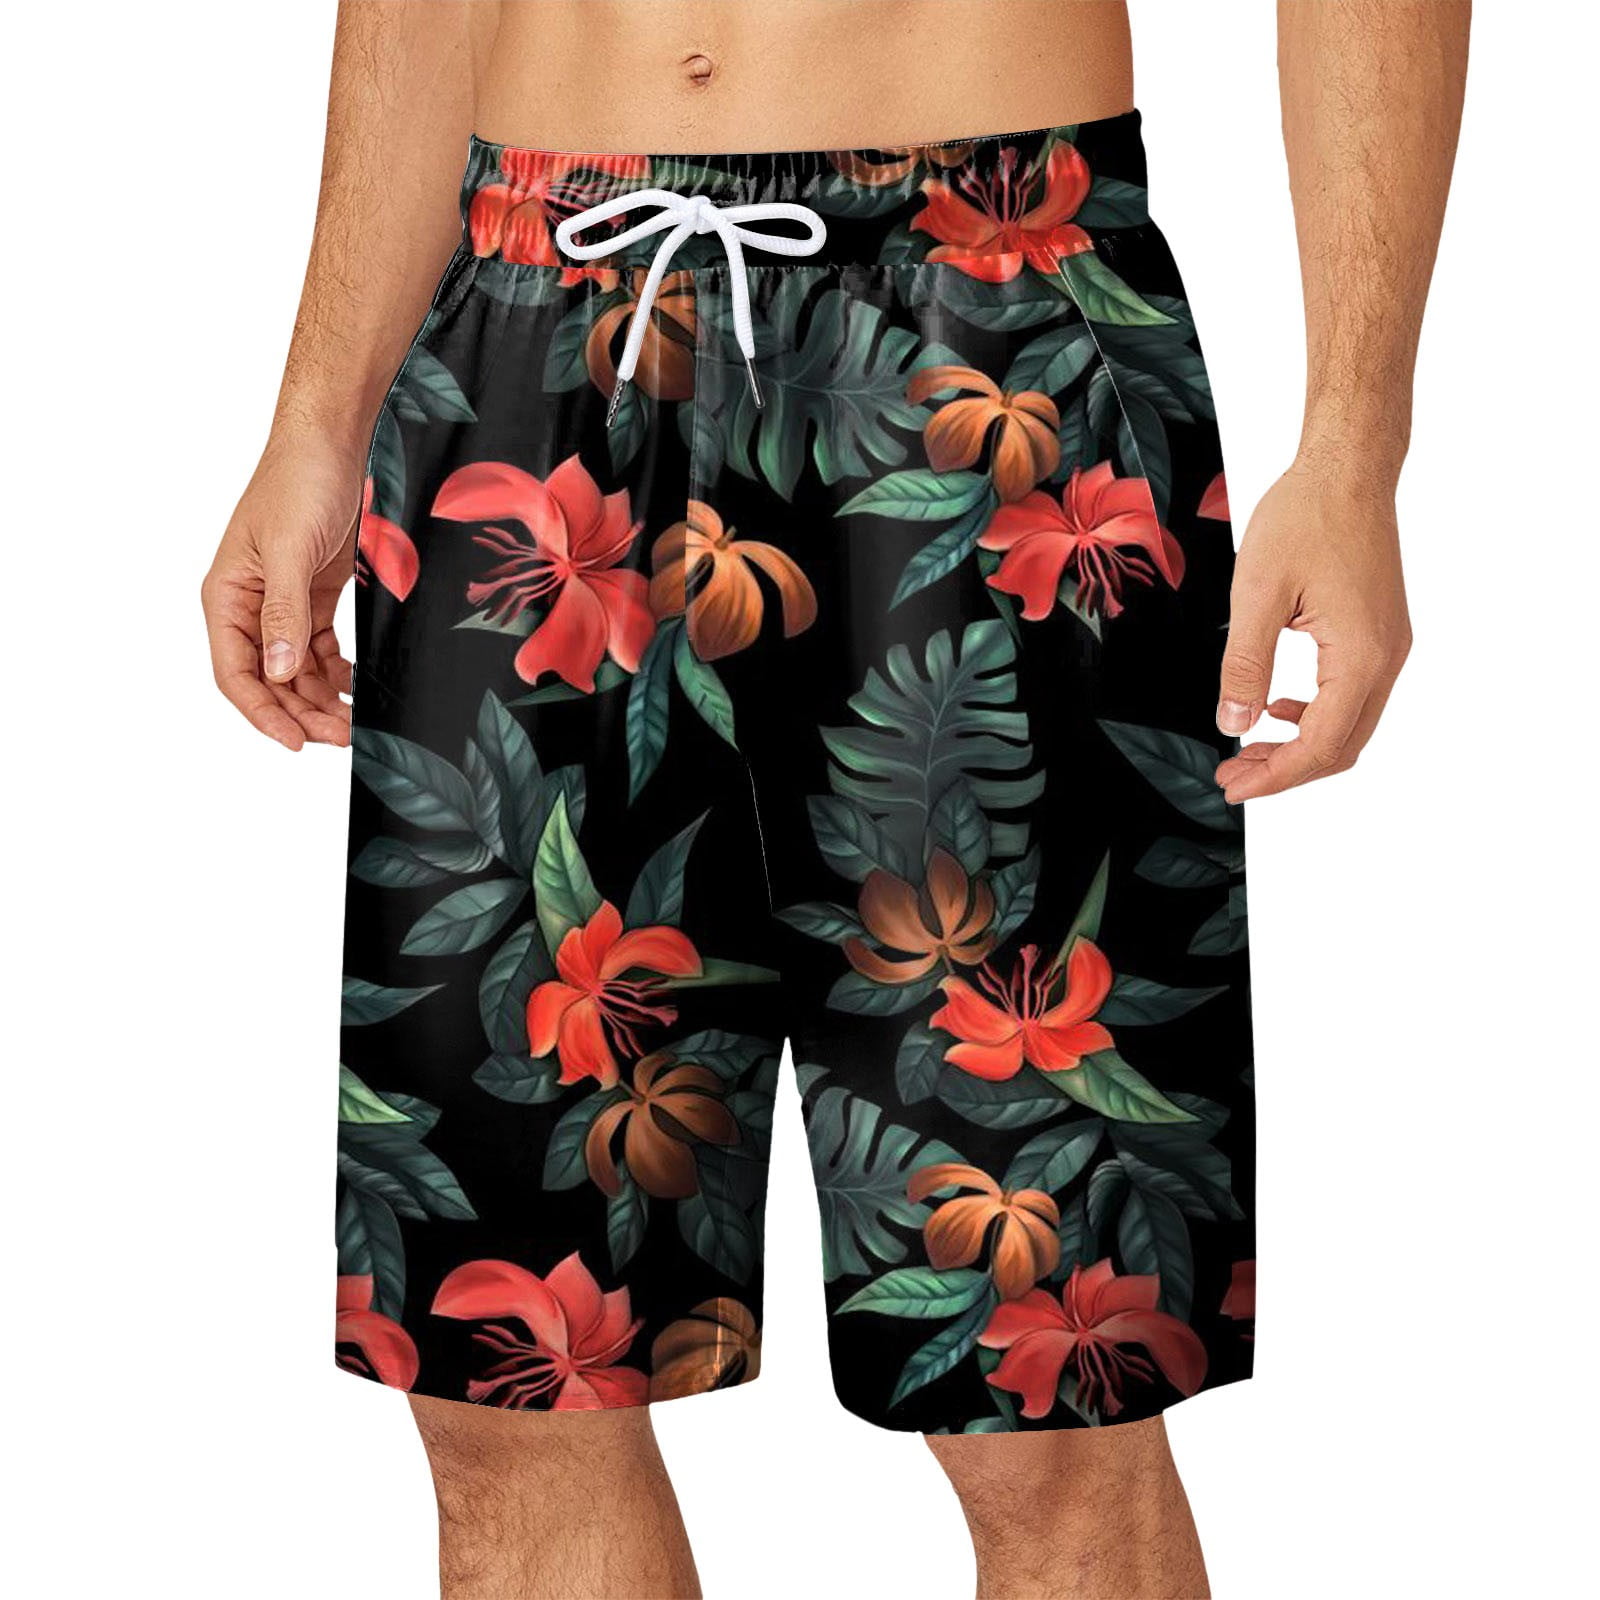 Pzocapte Board Shorts for Men Swim Men's Swim Trunks 5.5 Inch ...